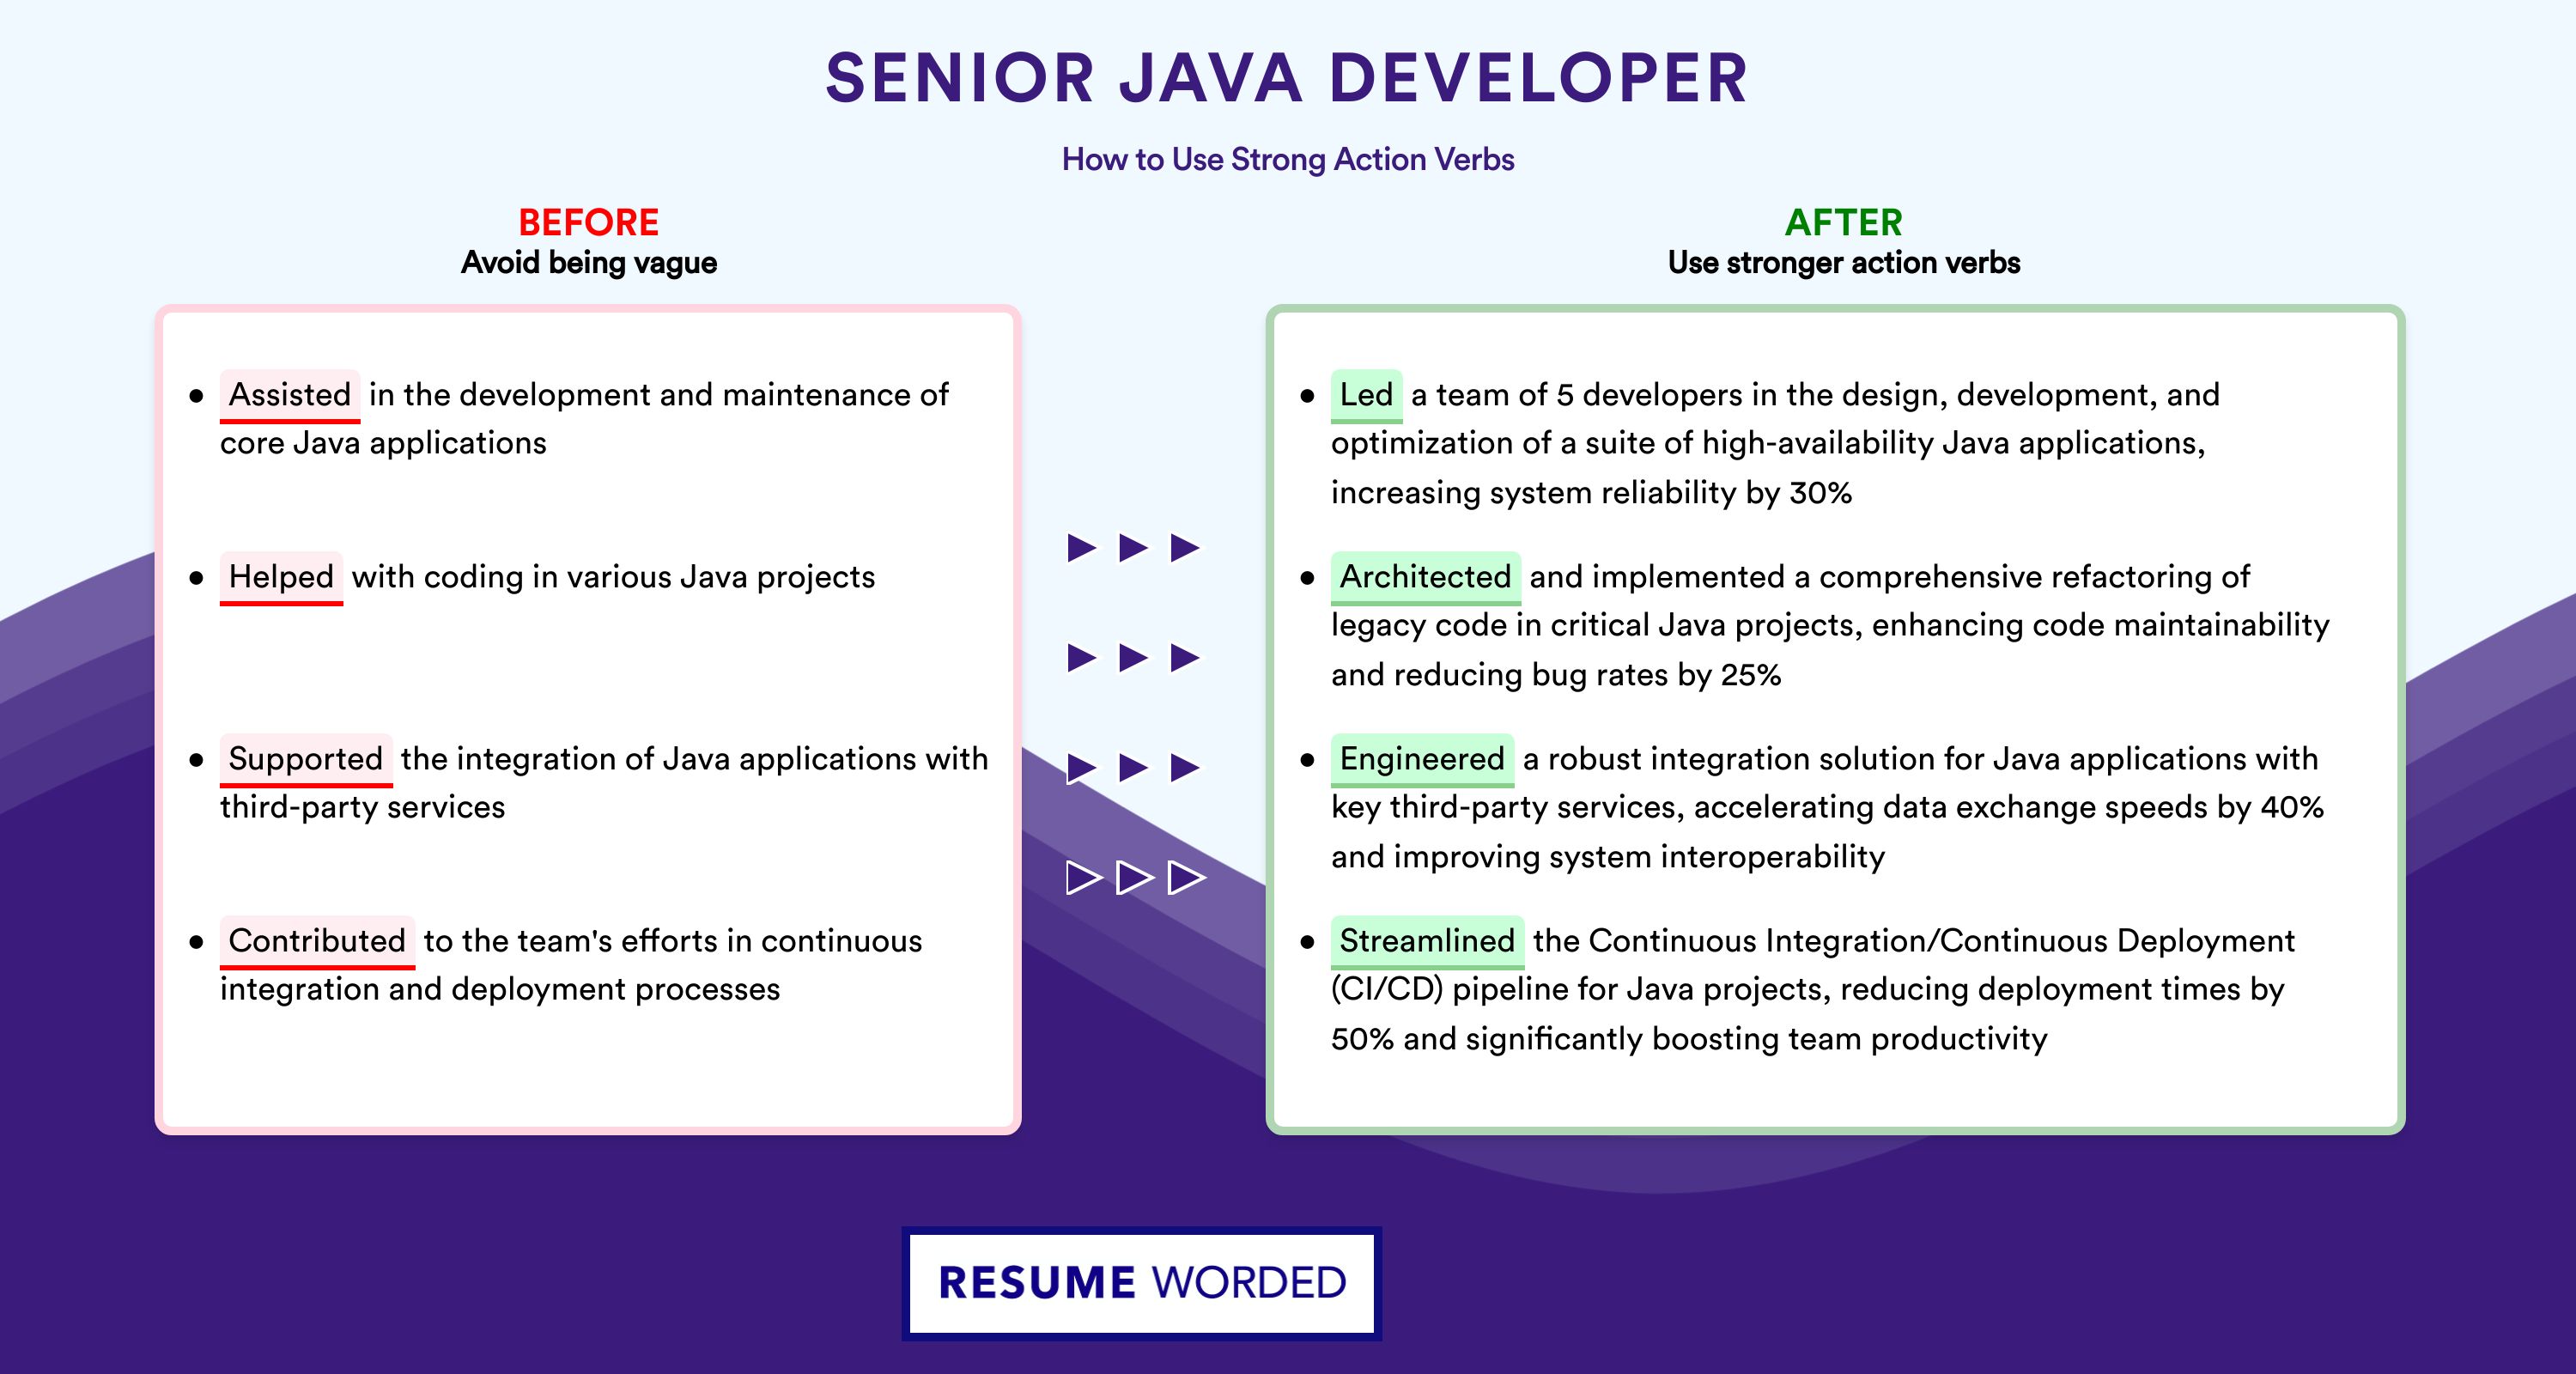 Action Verbs for Senior Java Developer